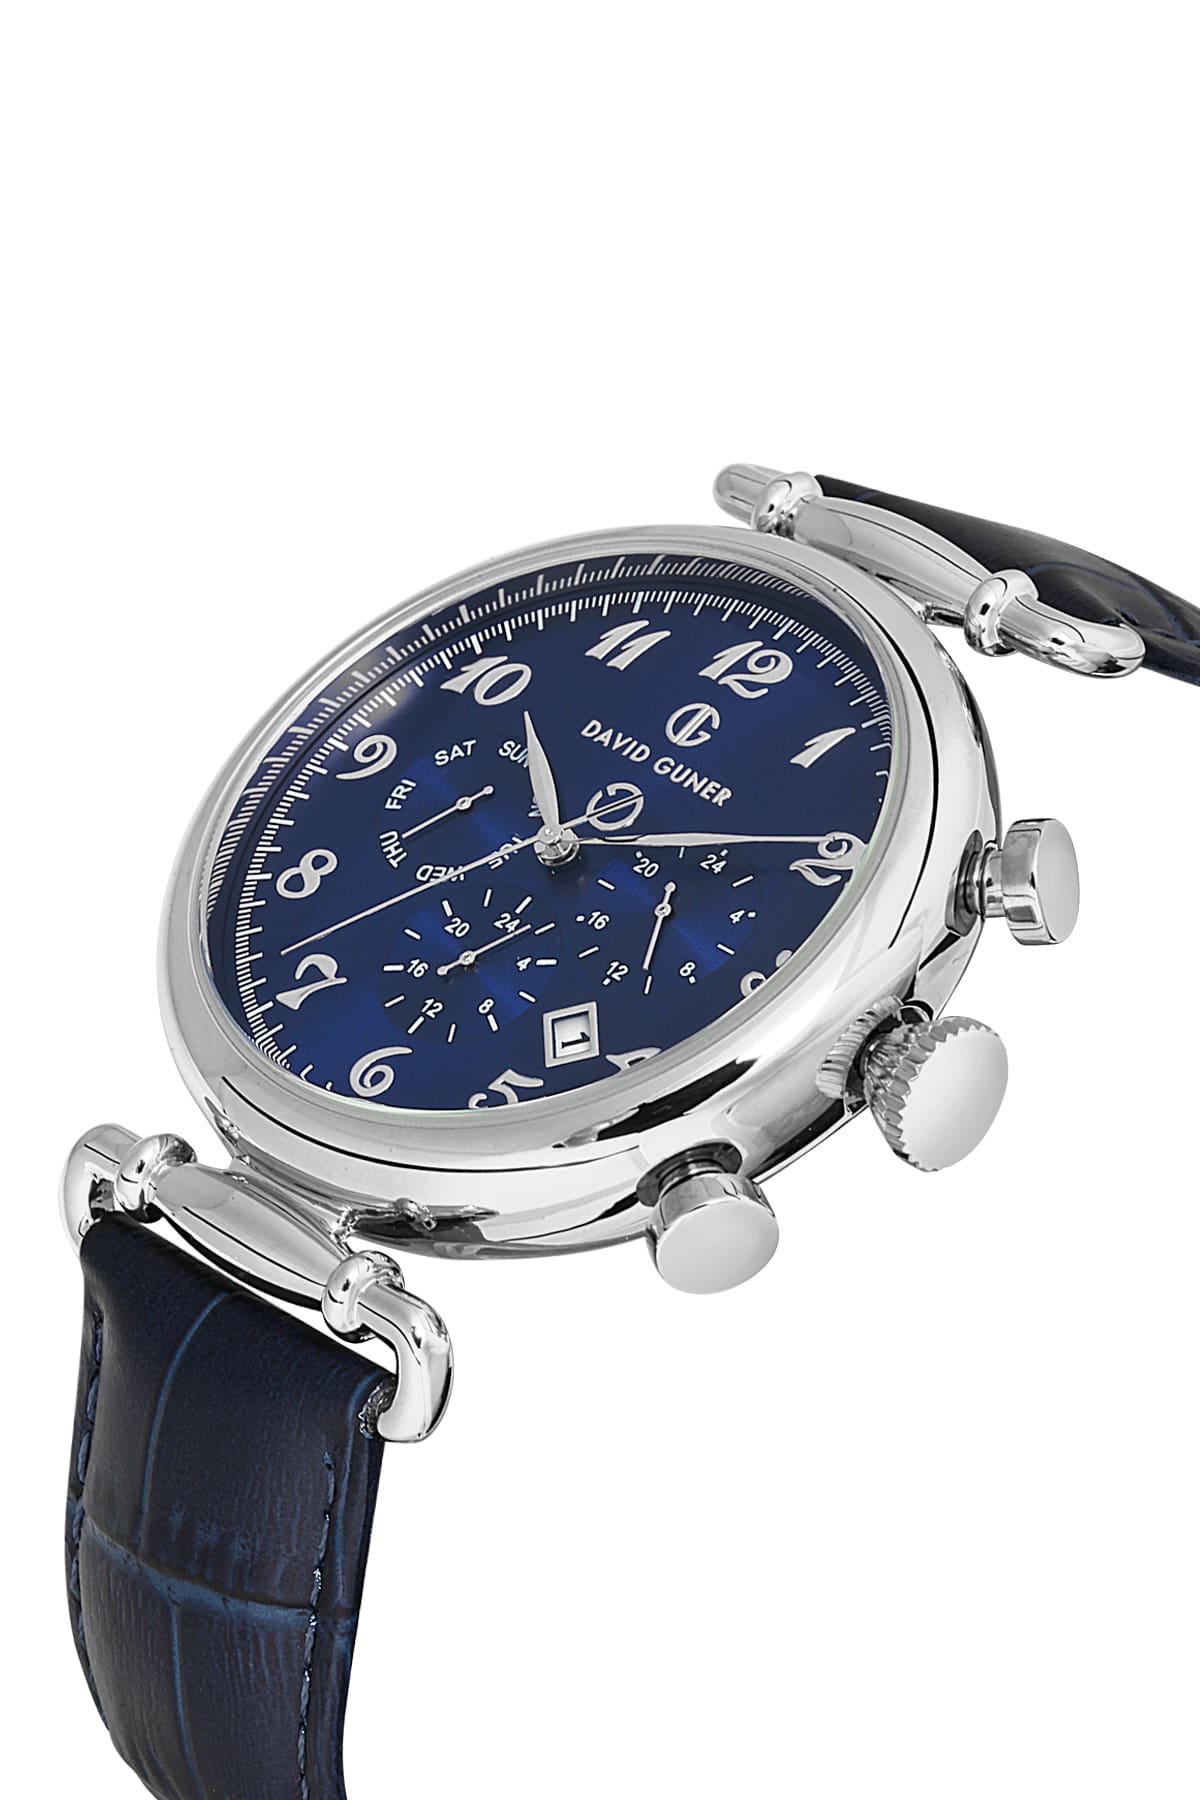 DAVID GUNER Dark Blue Dial Multifunctional Men's Wristwatch with Dark Blue Leather Strap